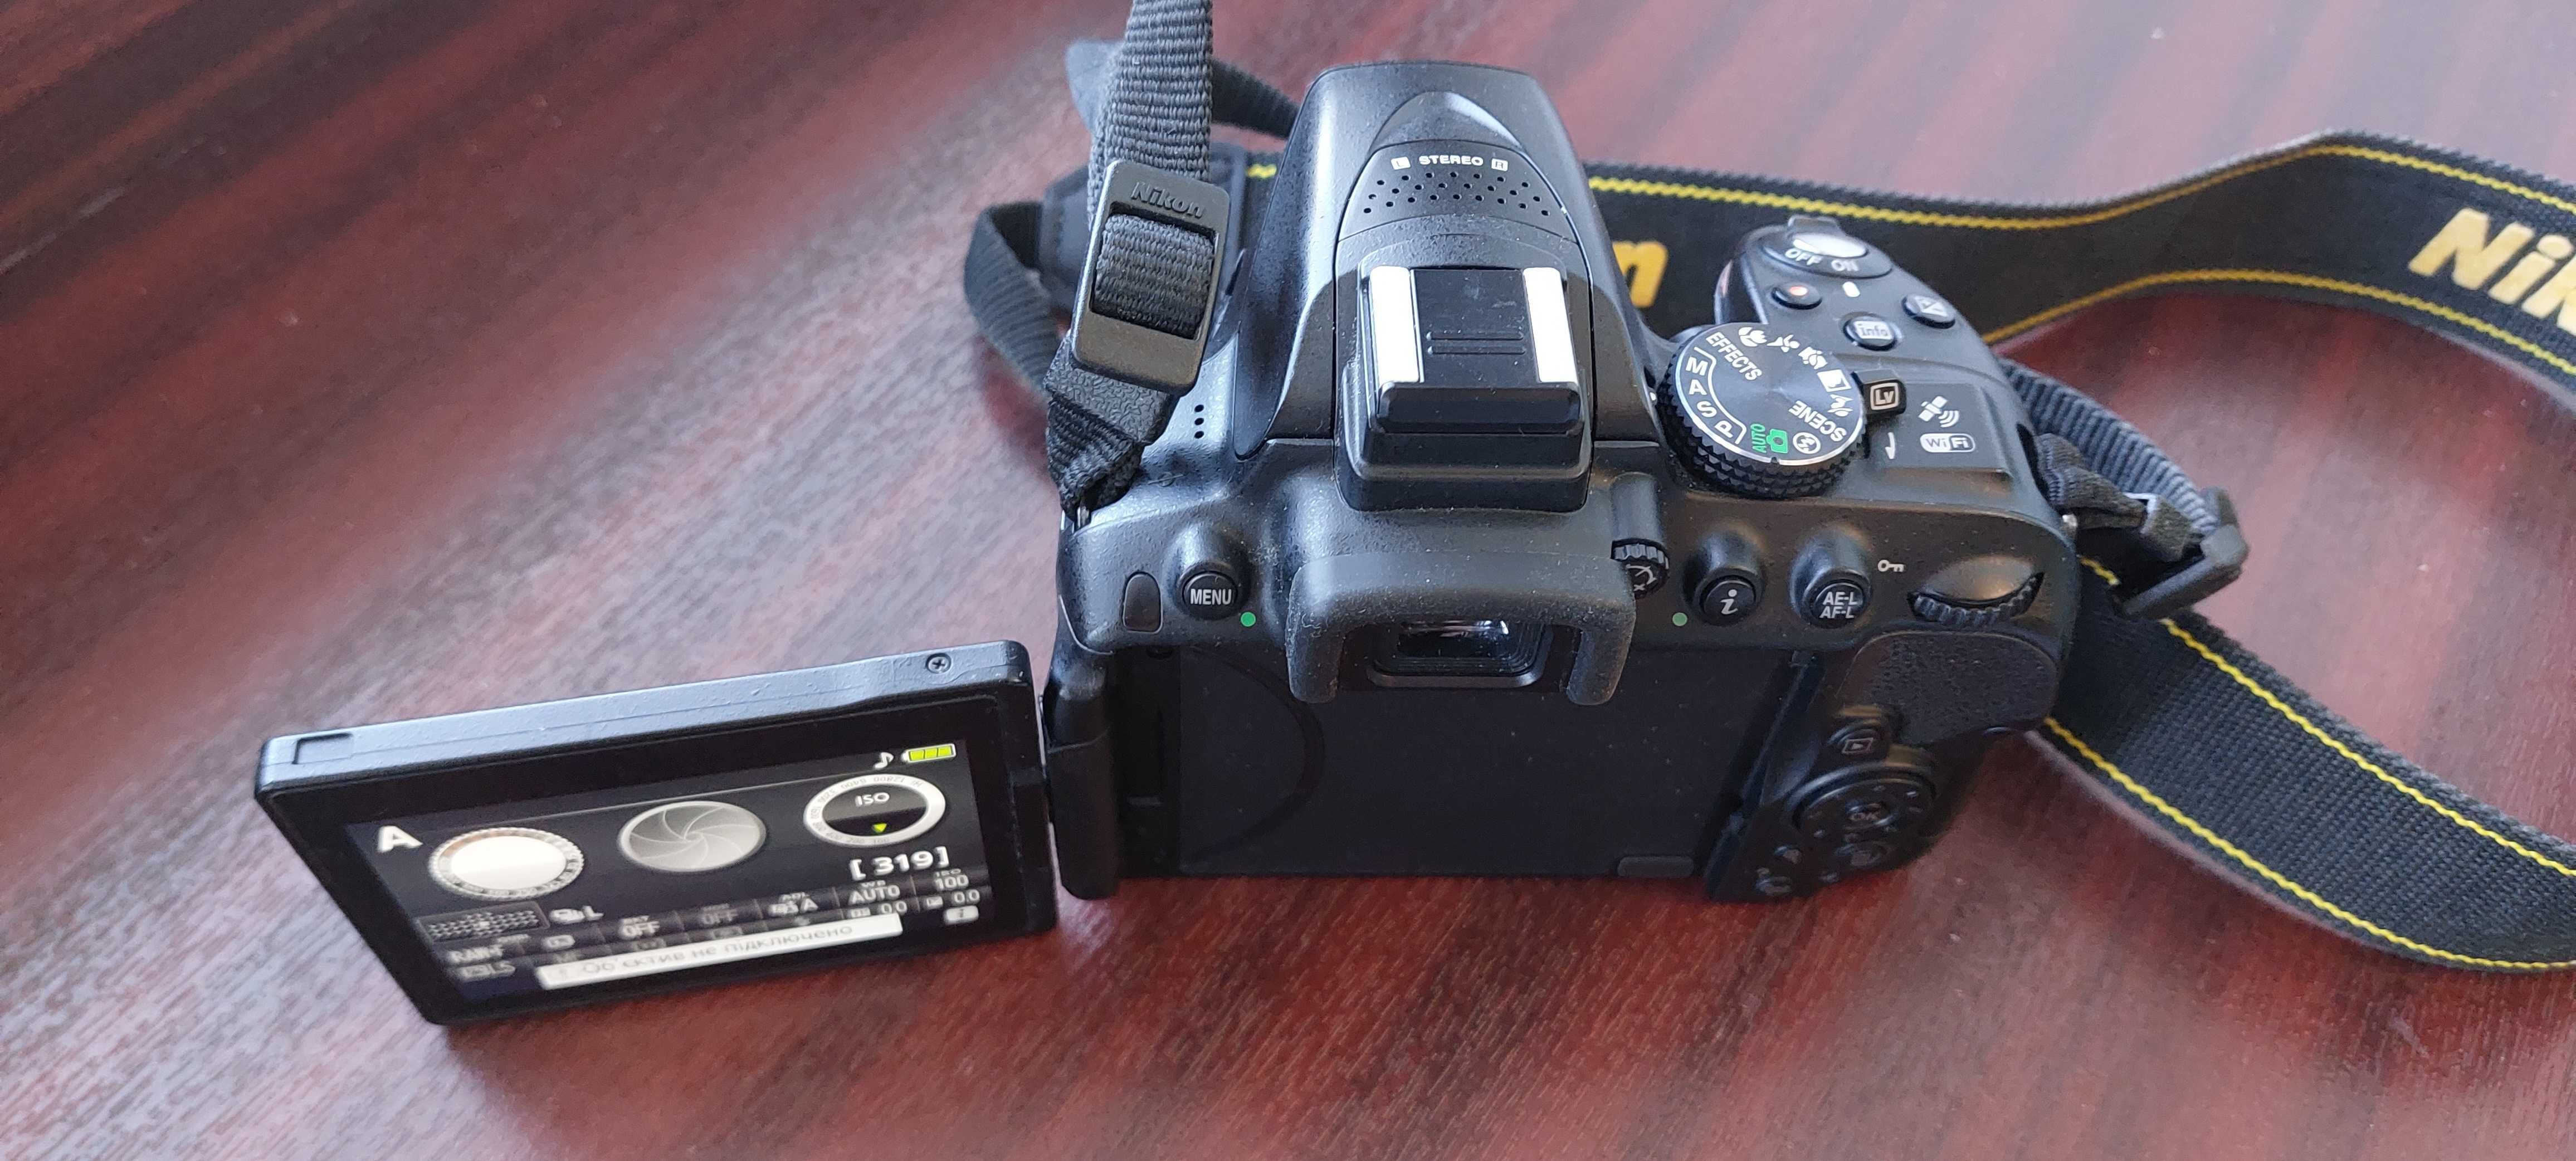 Nikon D5300 + AF-P DX VR 70-300mm f4.5-6.3G ED + DX AF-S 35mm 1:1.8G